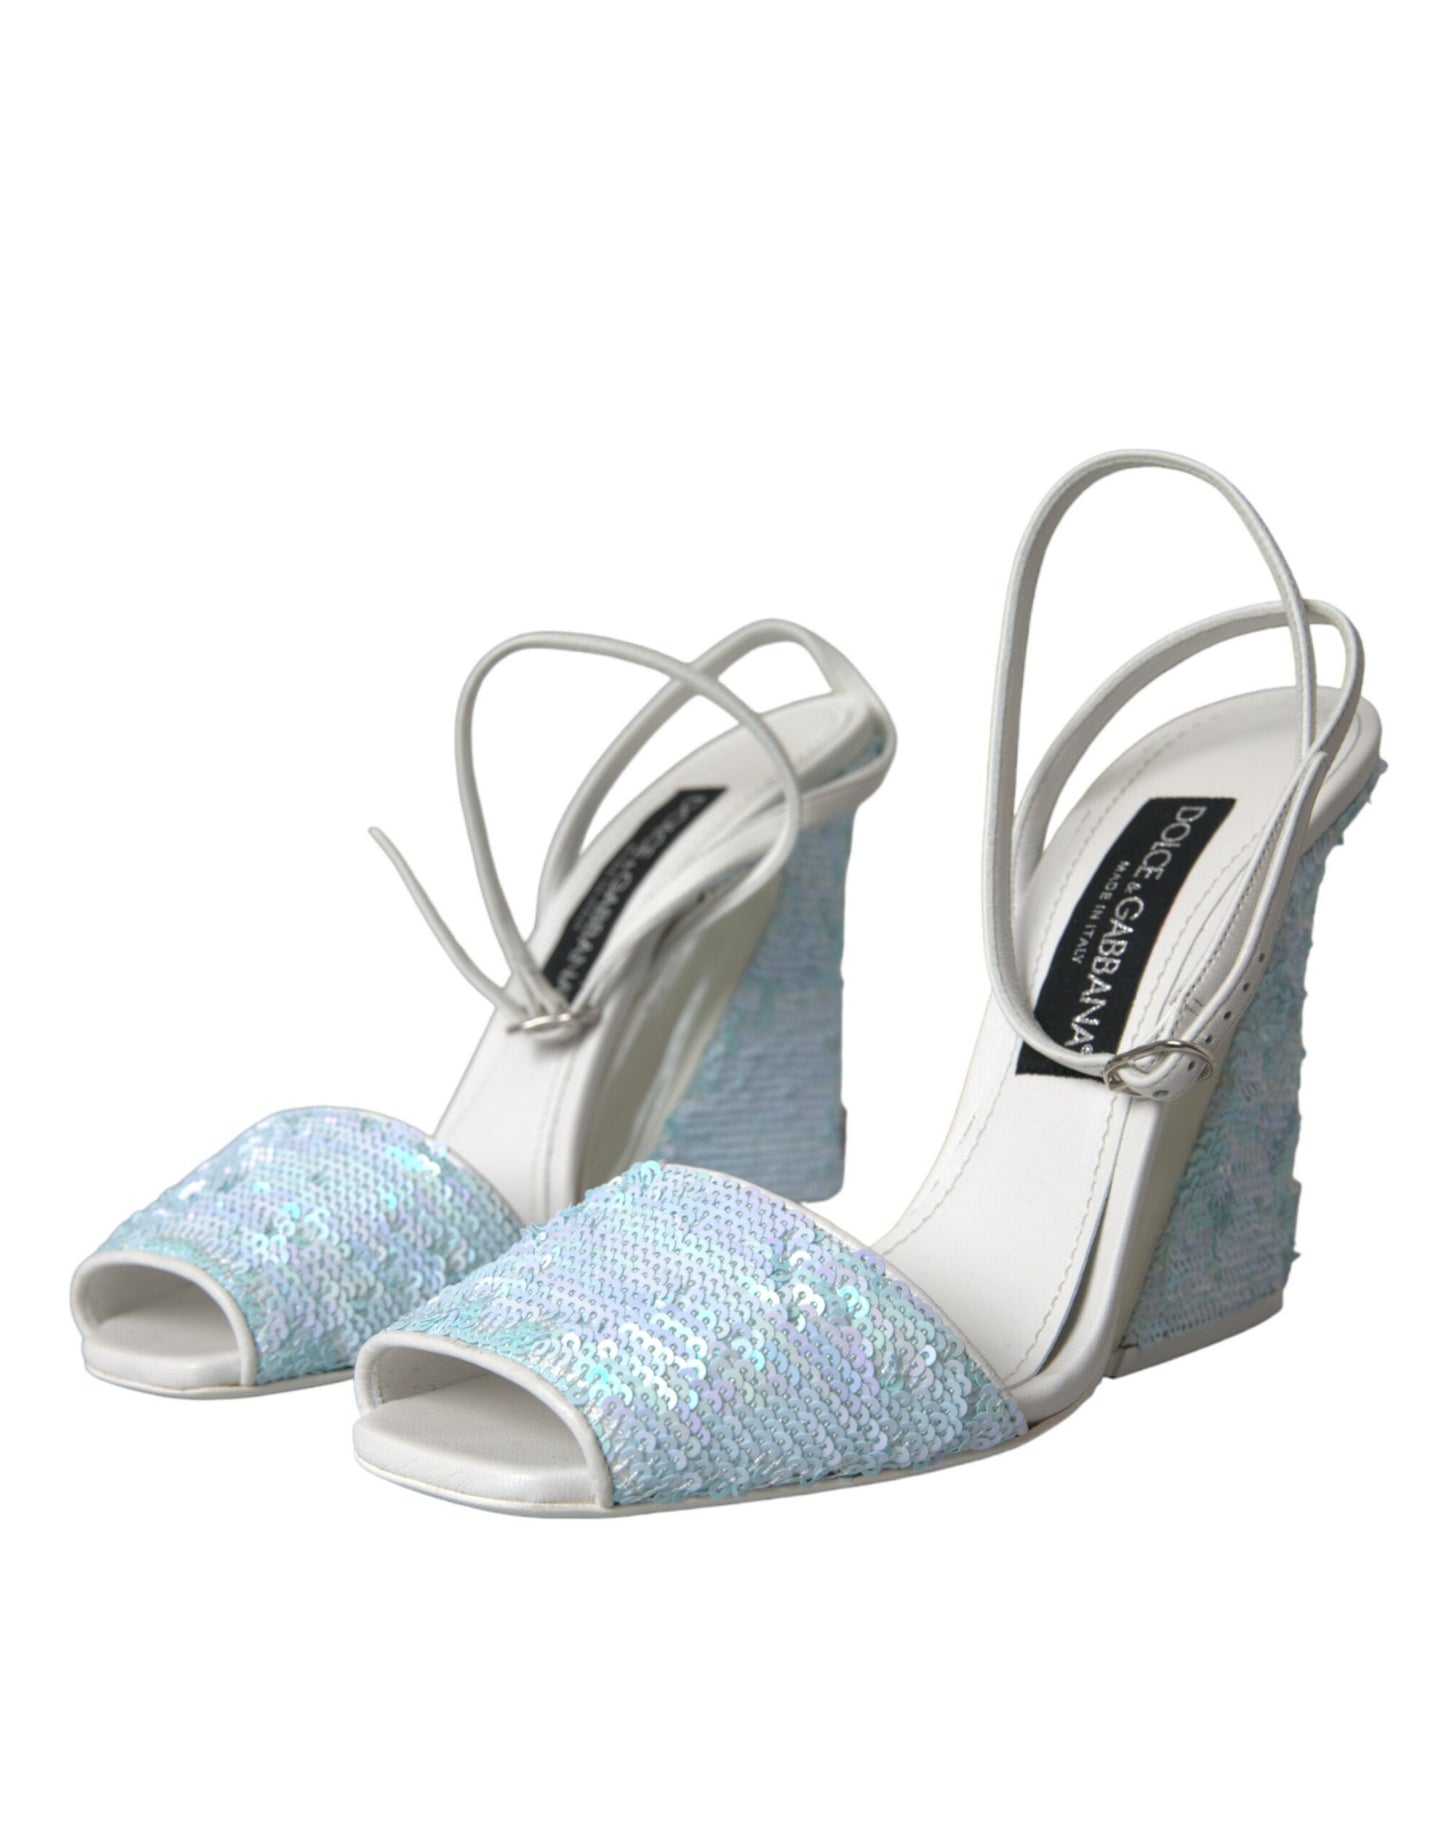 Light Blue Sequin Ankle Strap Sandals Shoes